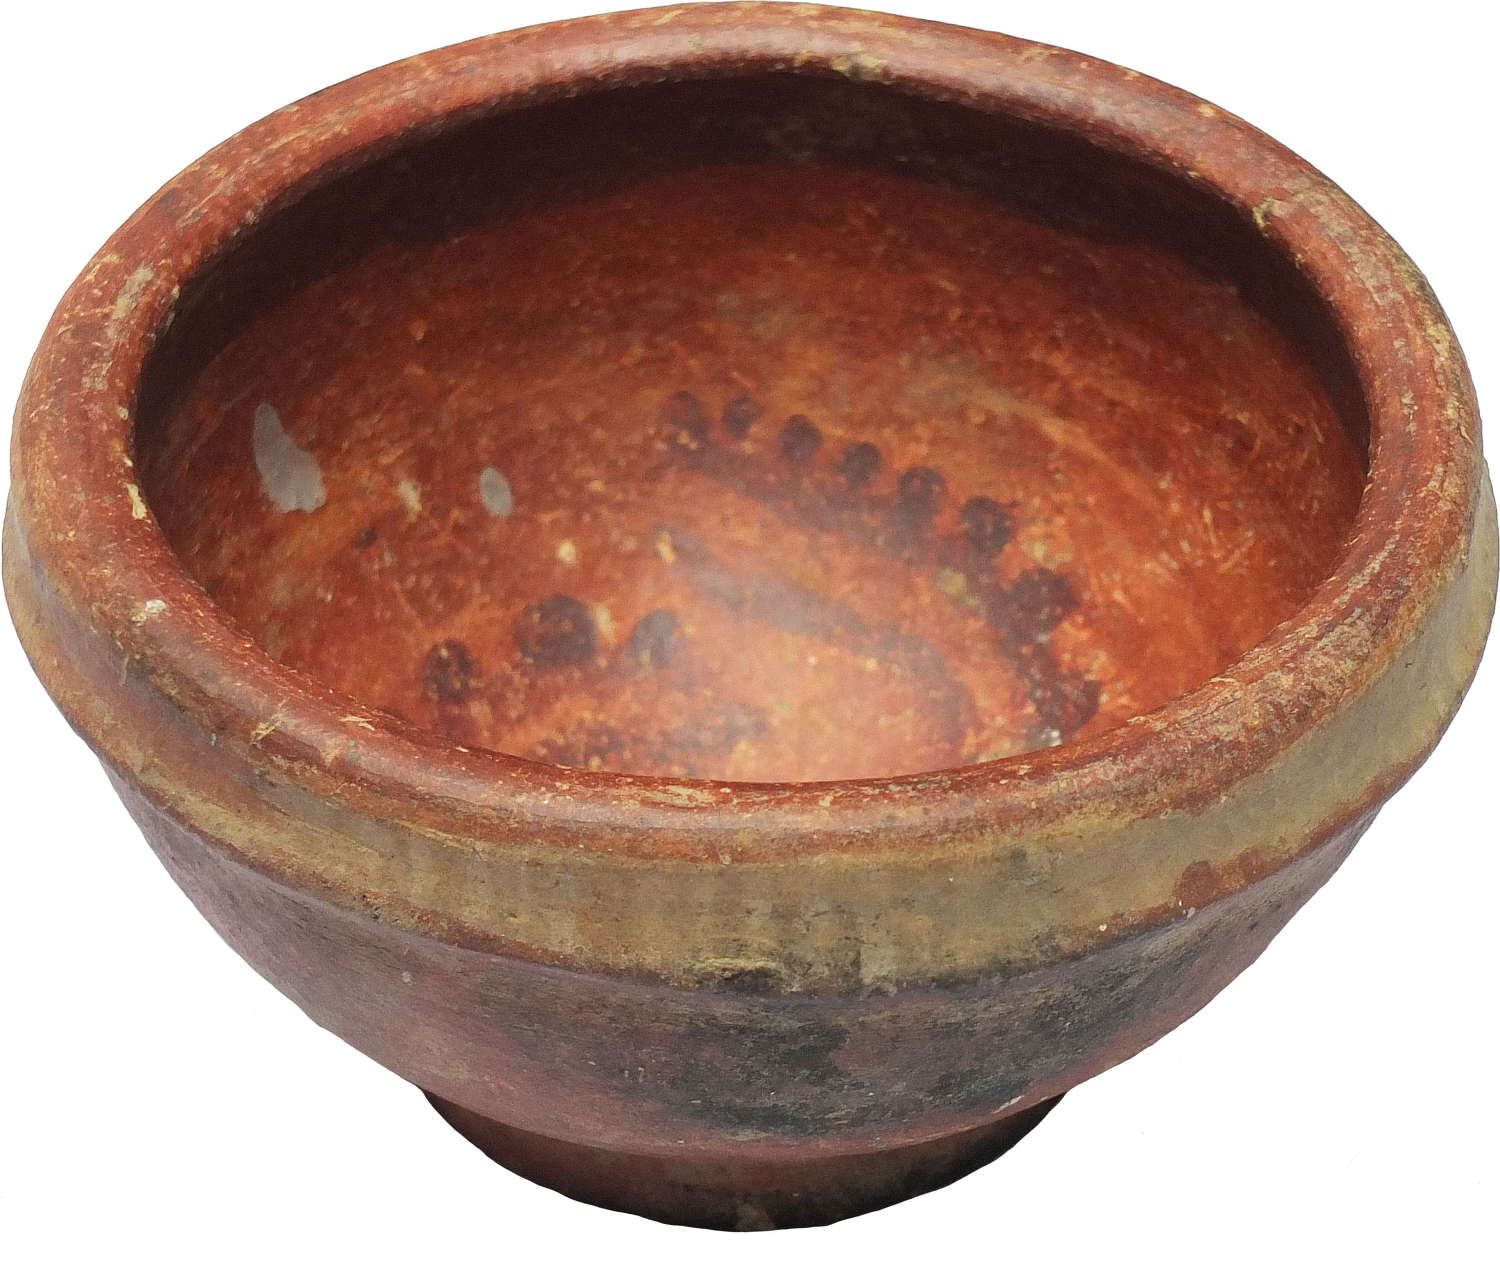 A Costa Rican orange terracotta red-slipped bowl, c. 800-1500 A.D.